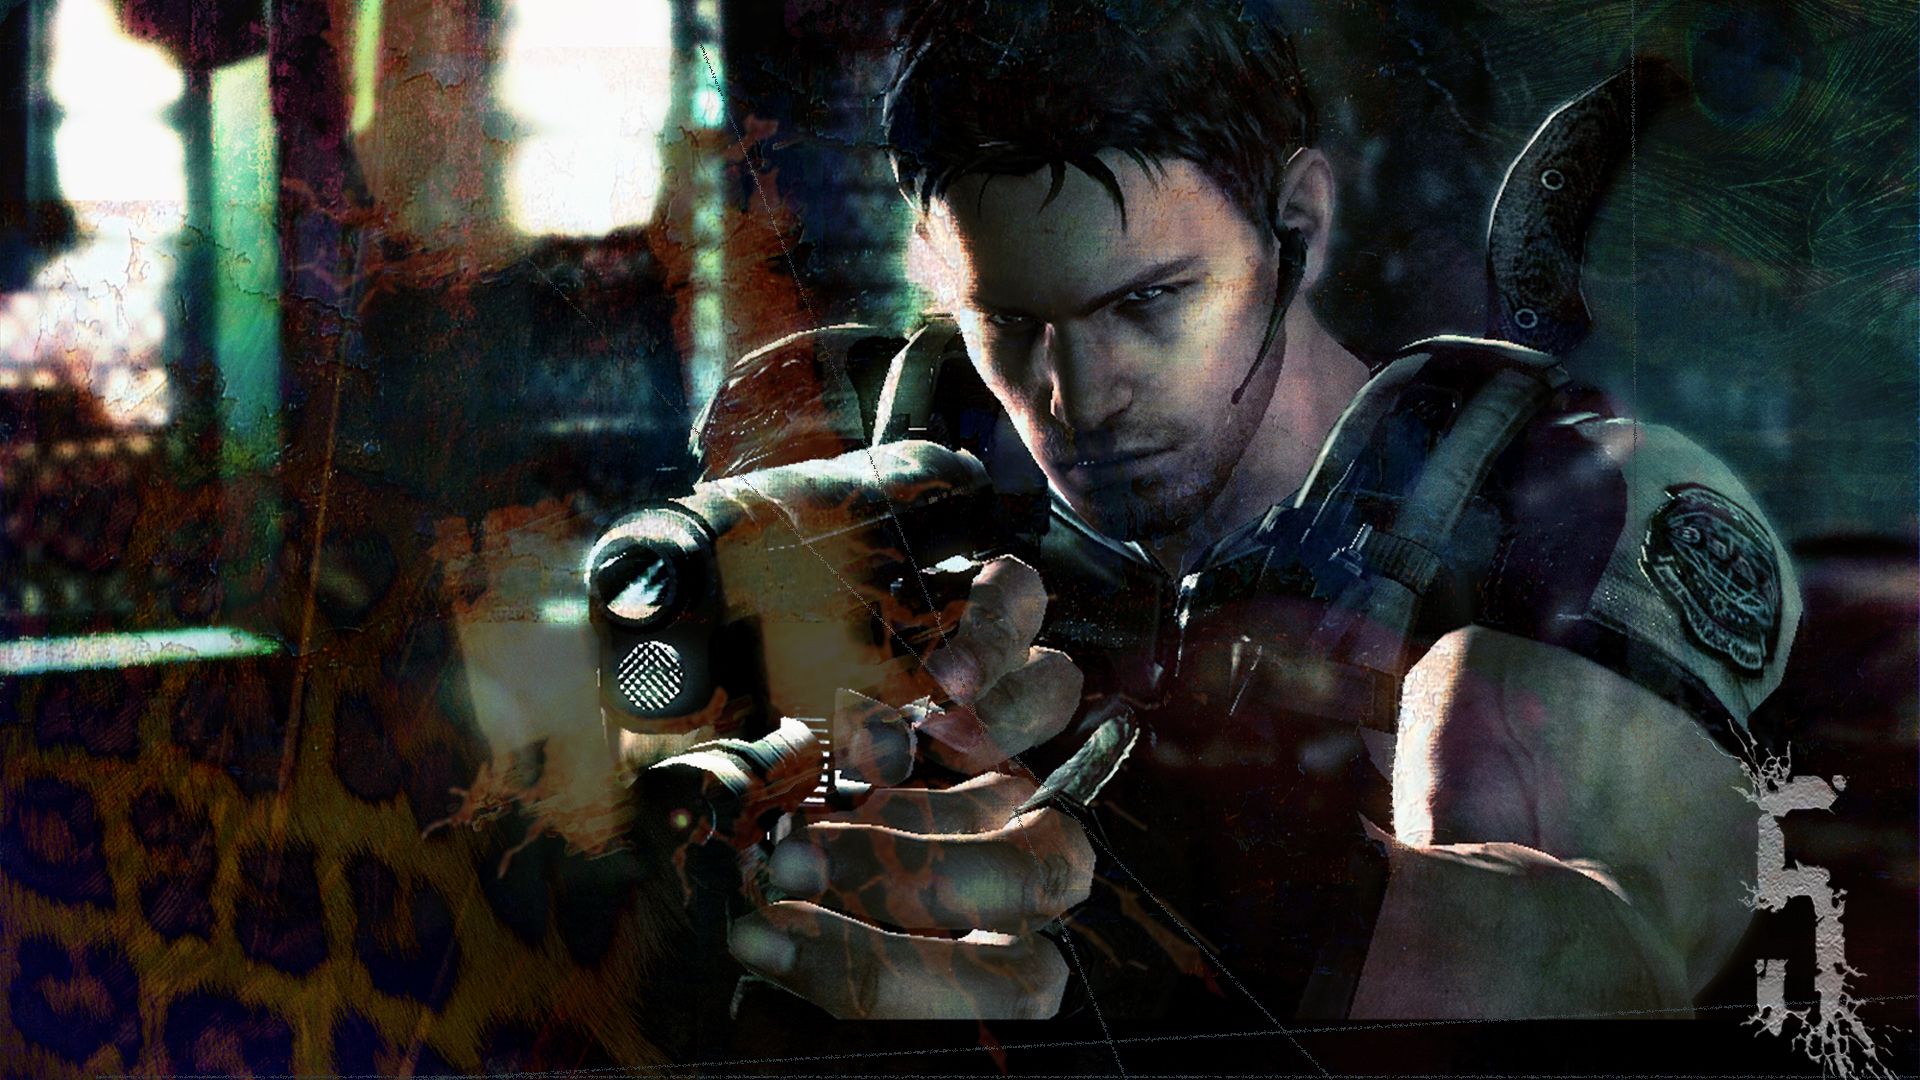 Berserker - Tear Through the Game Resident Evil 5 Backgrounds